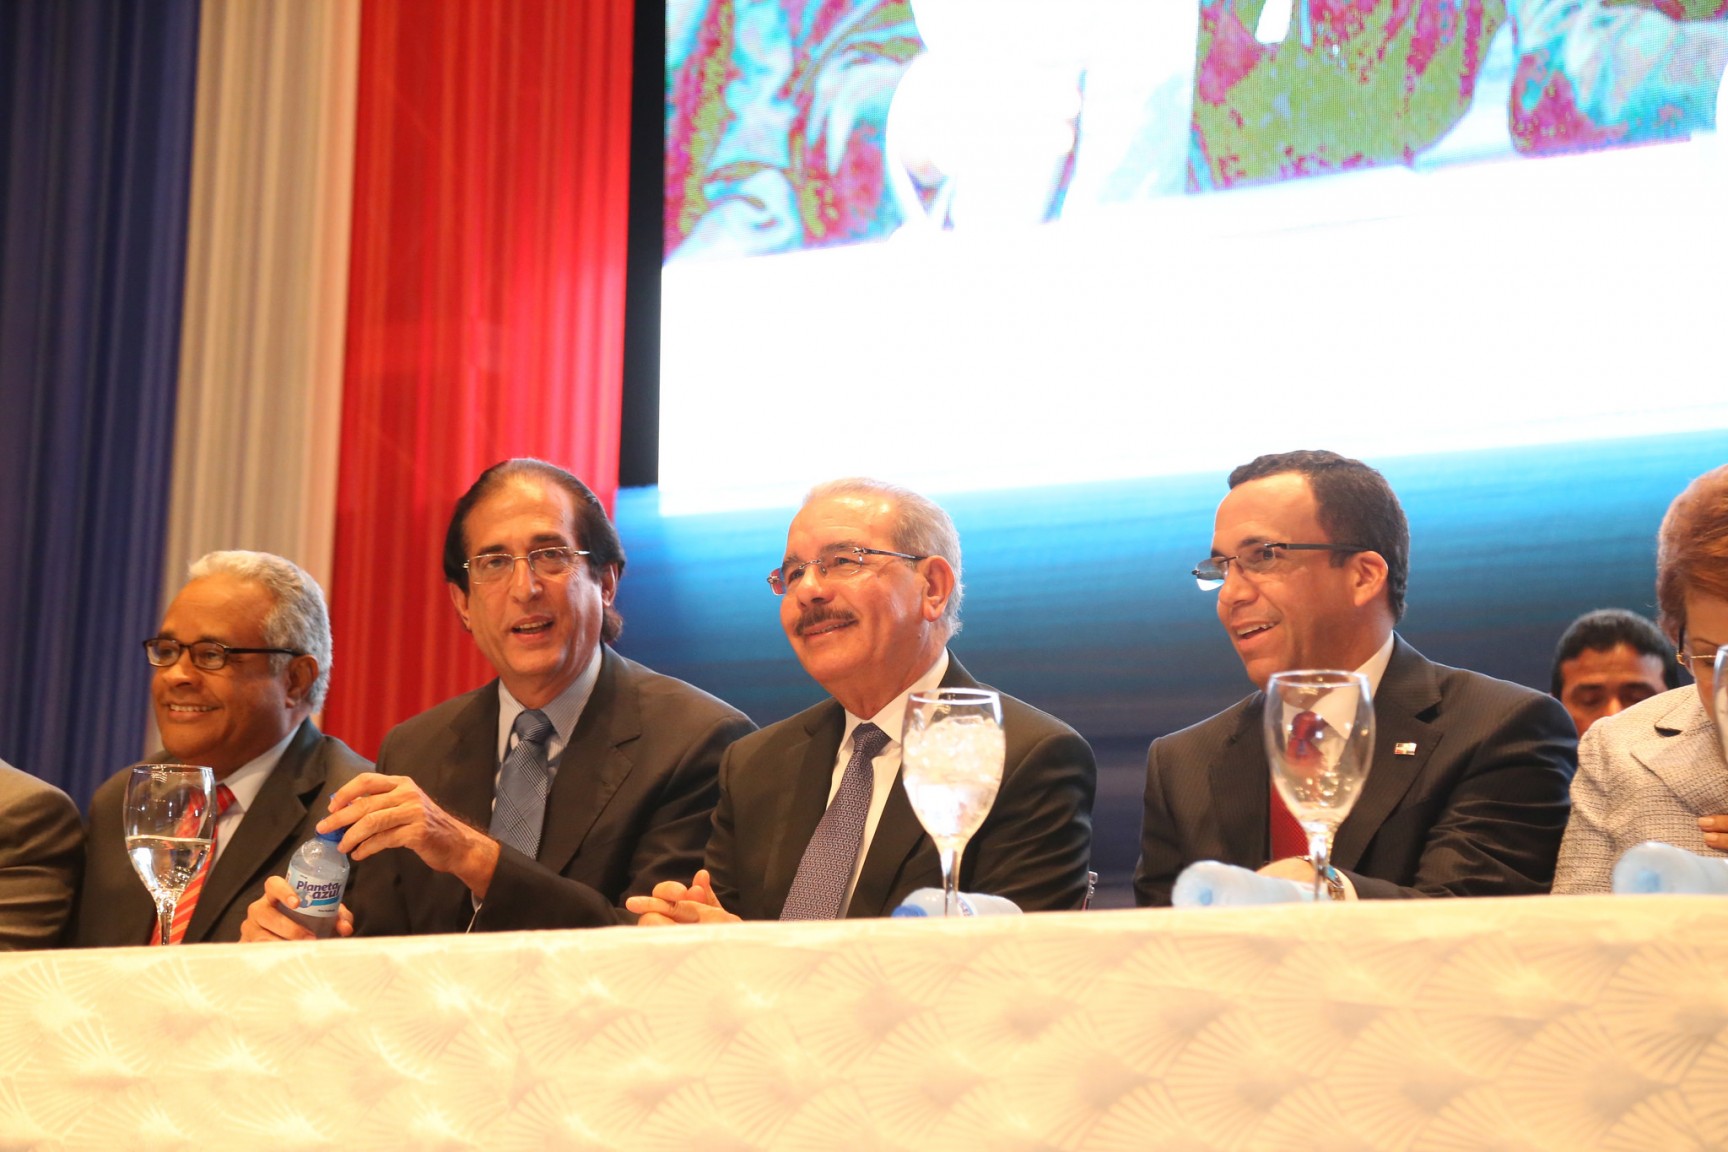 REPÚBLICA DOMINICANA: Presidente Danilo Medina presenta nuevos servicios en línea de República Digital